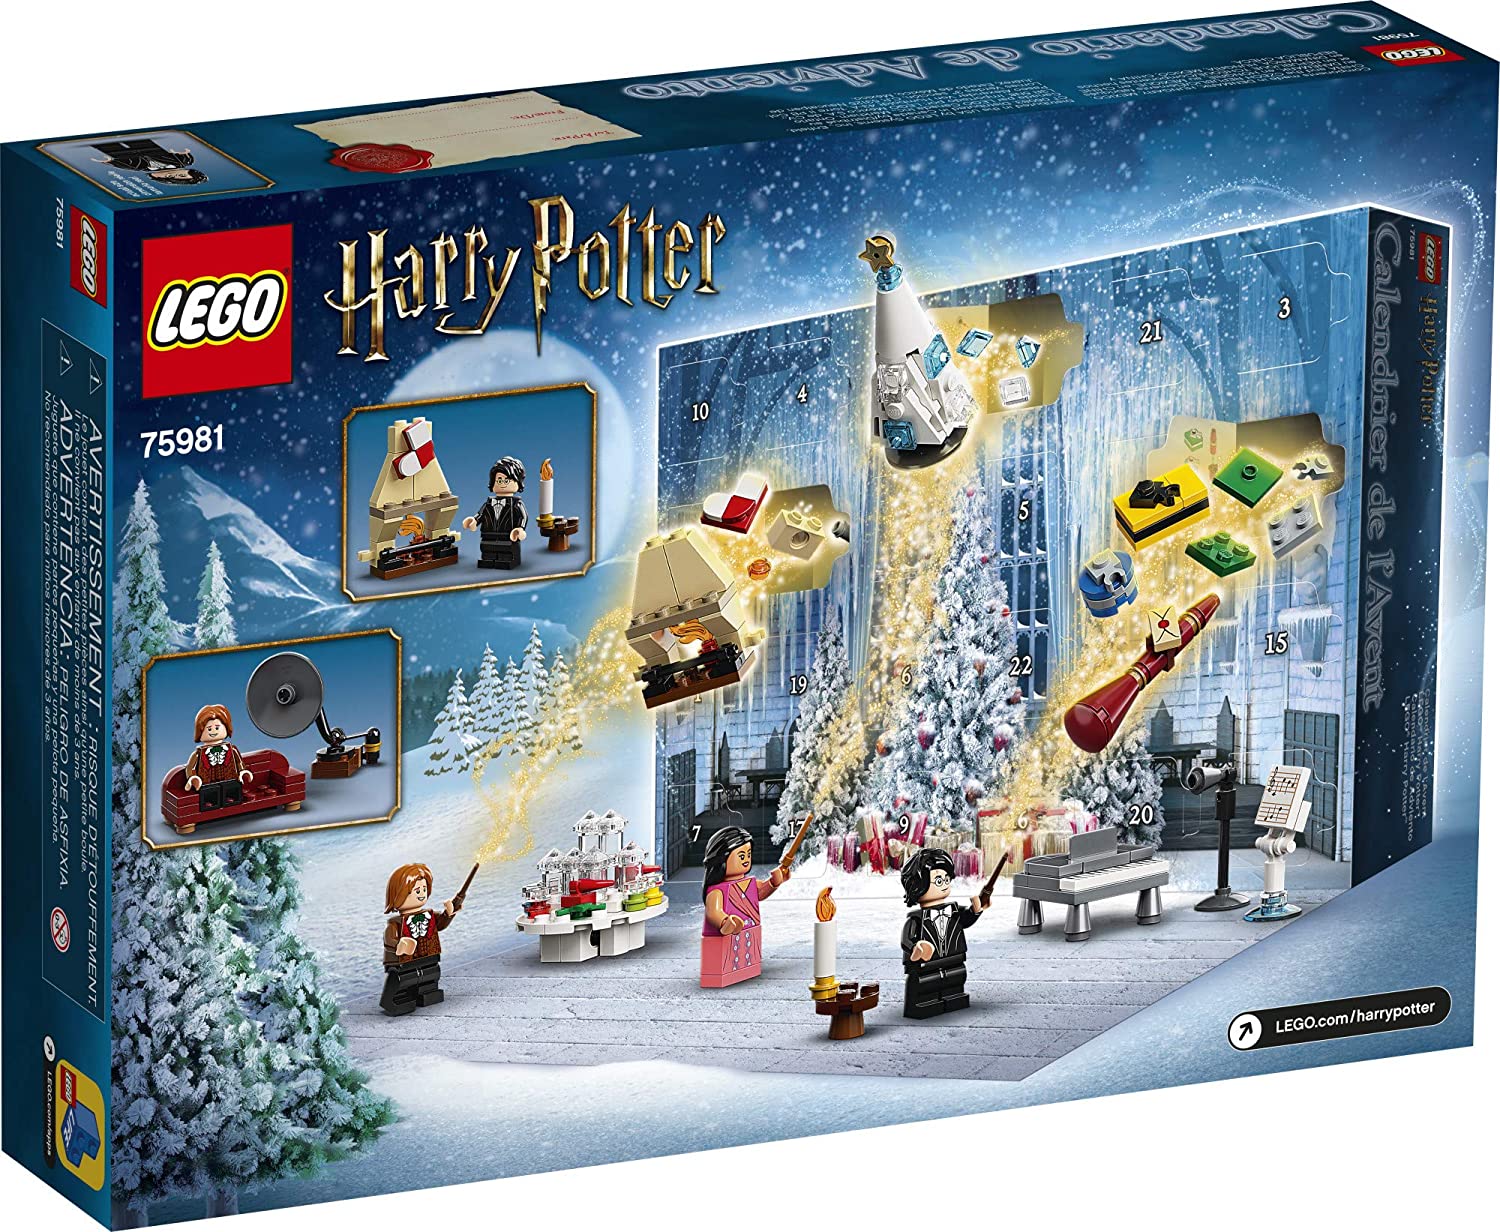 Lego Harry Potter: Calendário do Advento — Juguetesland